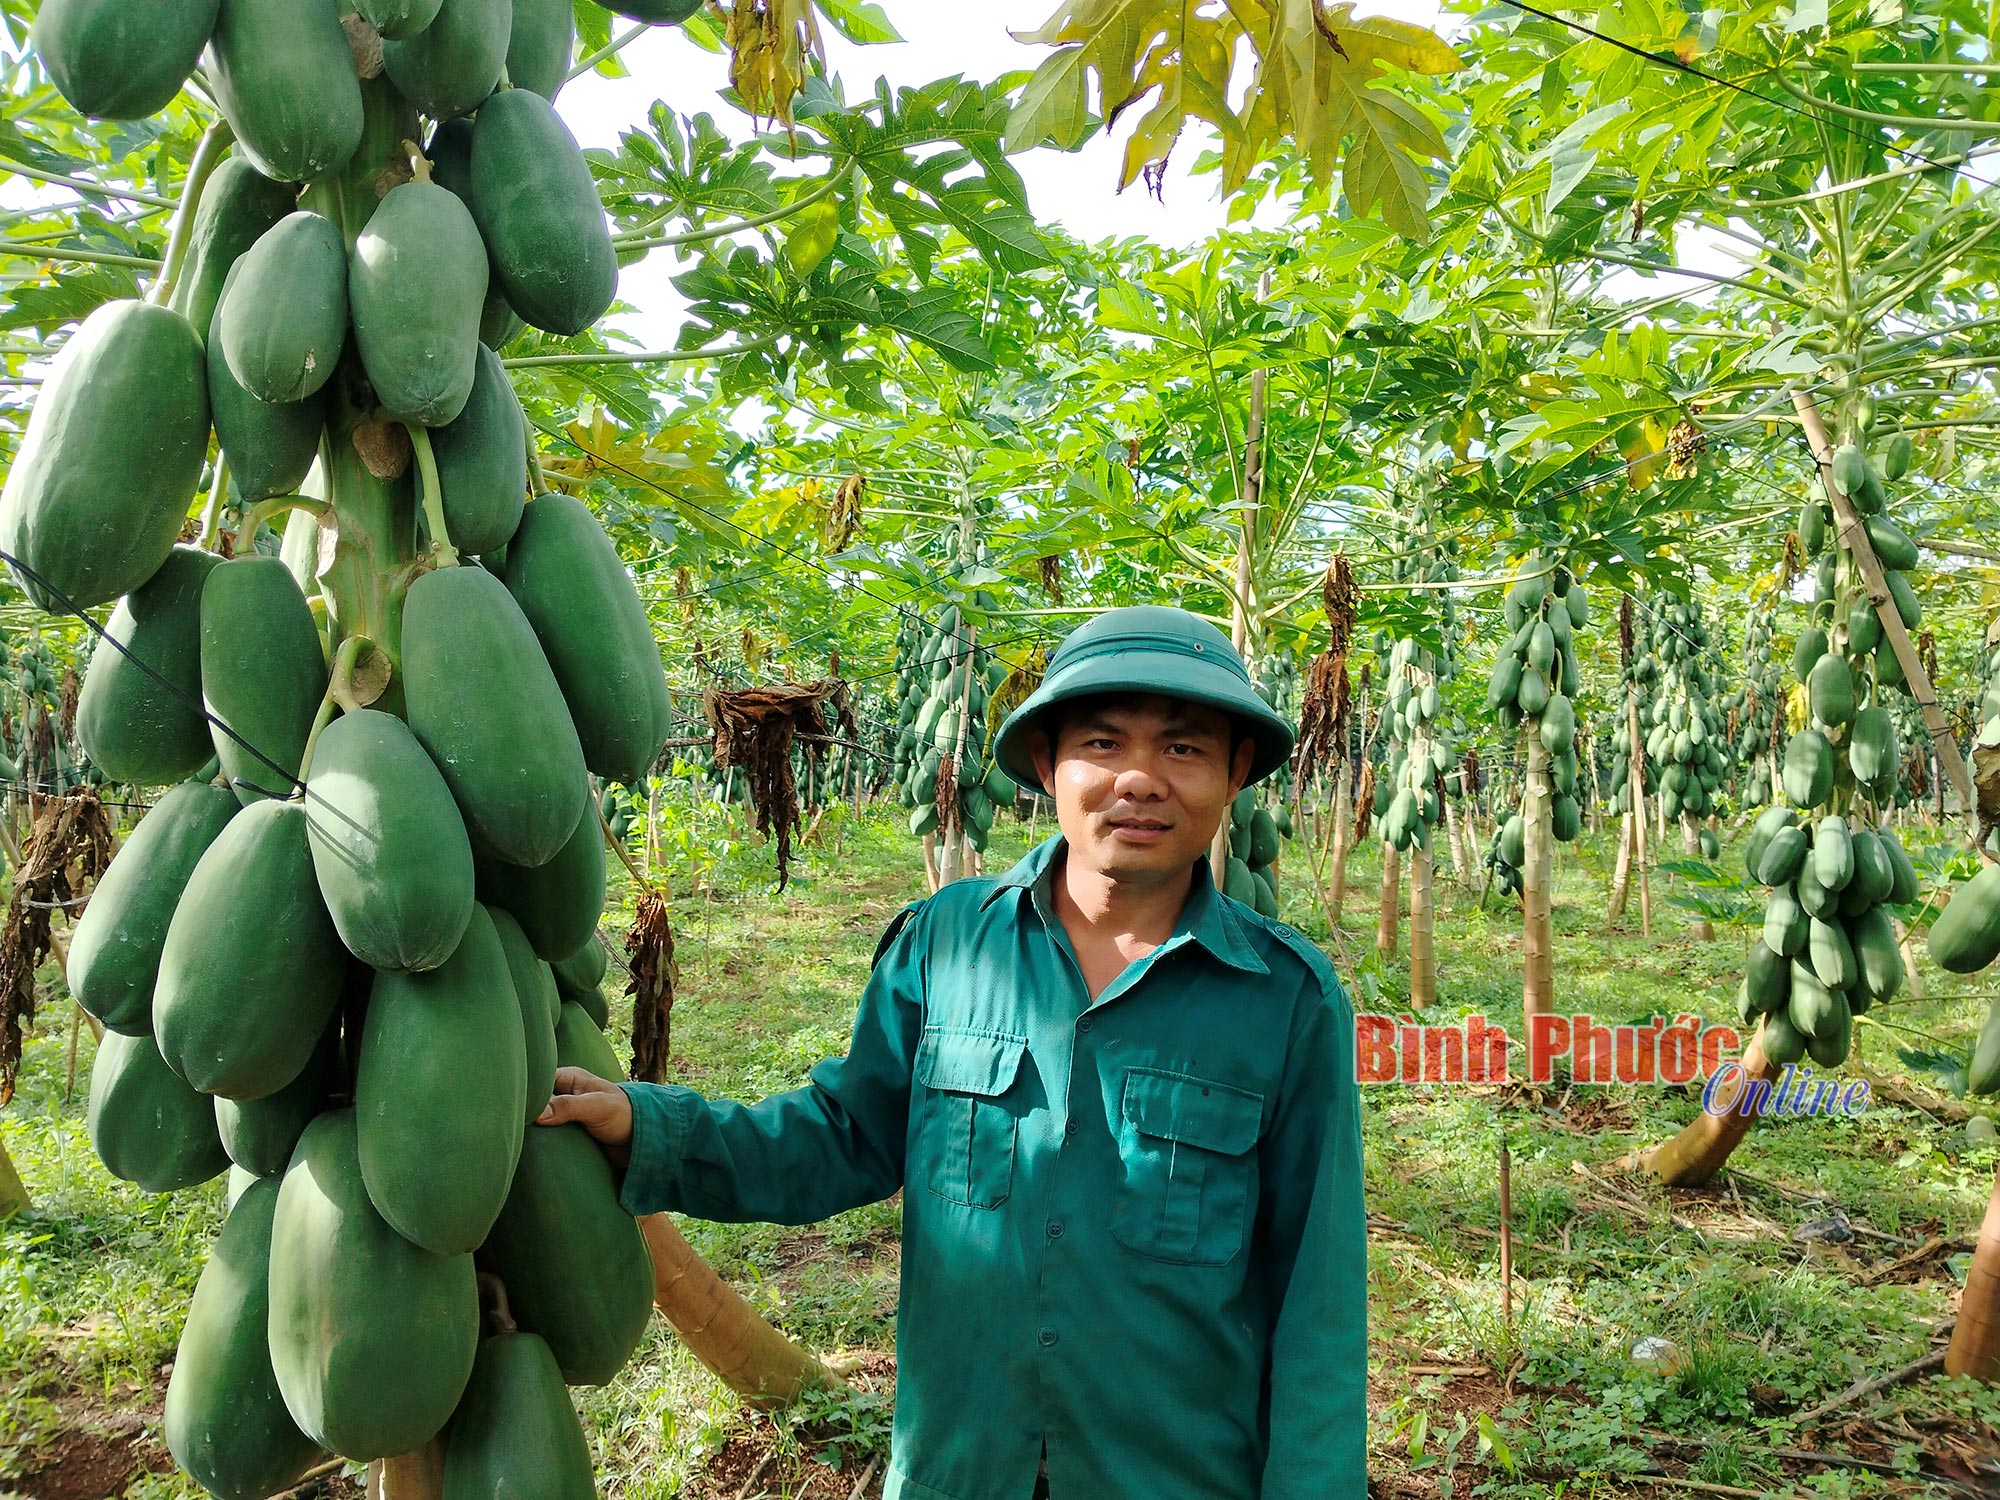 Thứ quả xanh "đeo cây" la liệt, vườn đẹp như phim, anh nông dân Bình Phước cắt bán lãi 700 triệu- Ảnh 2.